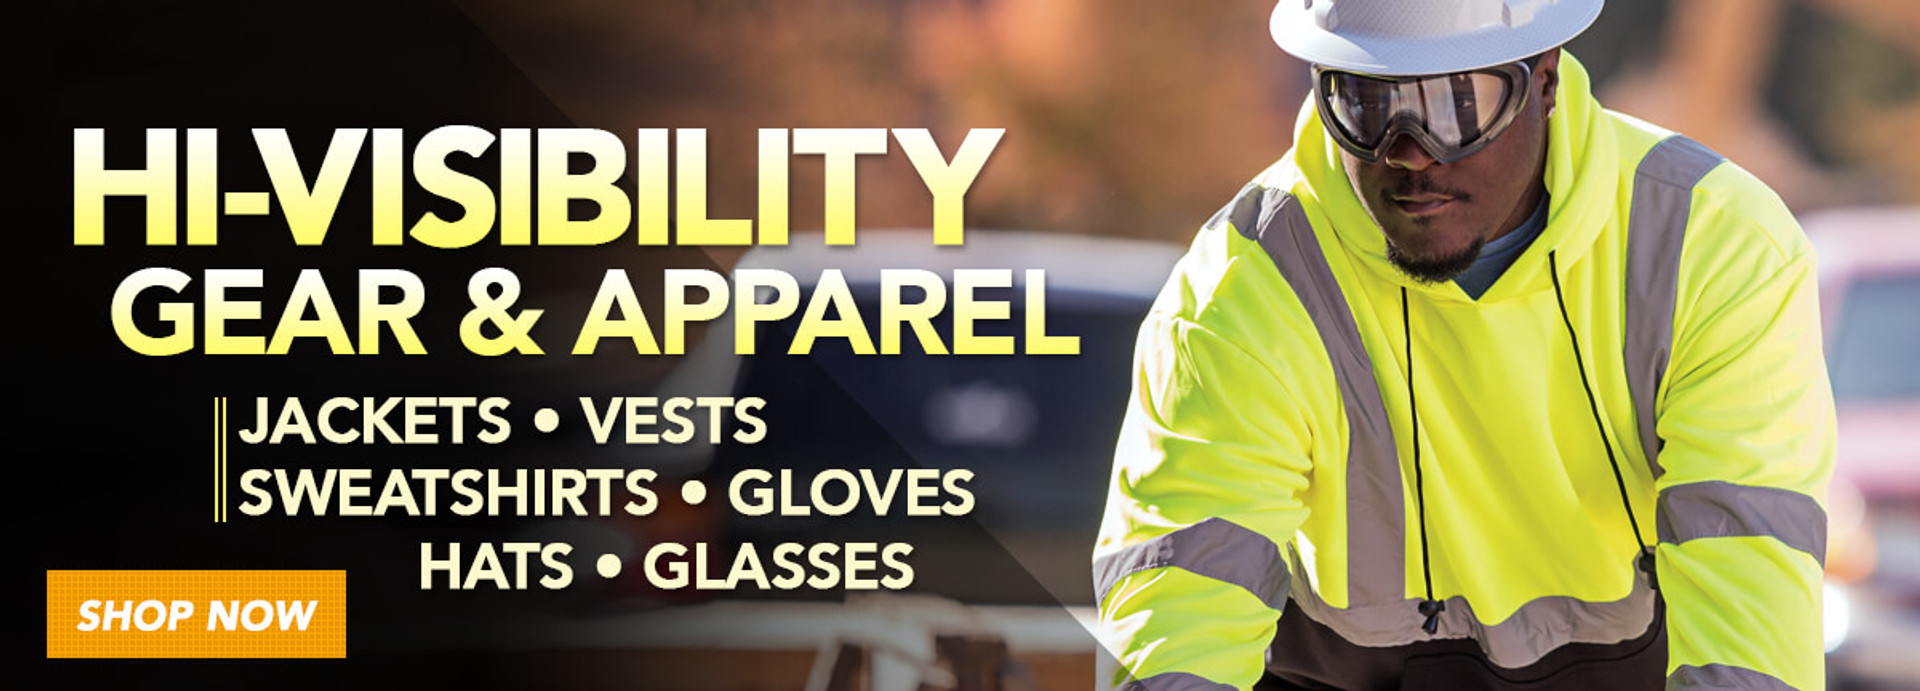 Shop Hi-Visibility Gear & Apparel